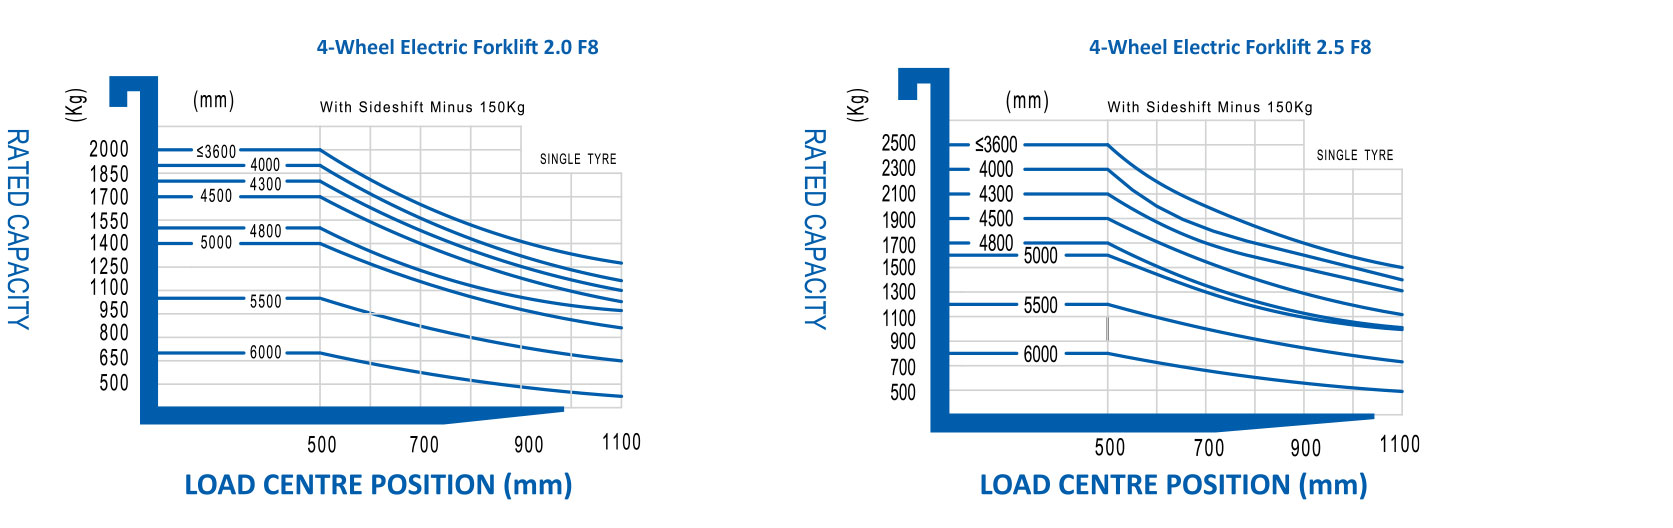 4-Wheel-Electric-Forklift-15-25_load-chart1.jpg (141 KB)